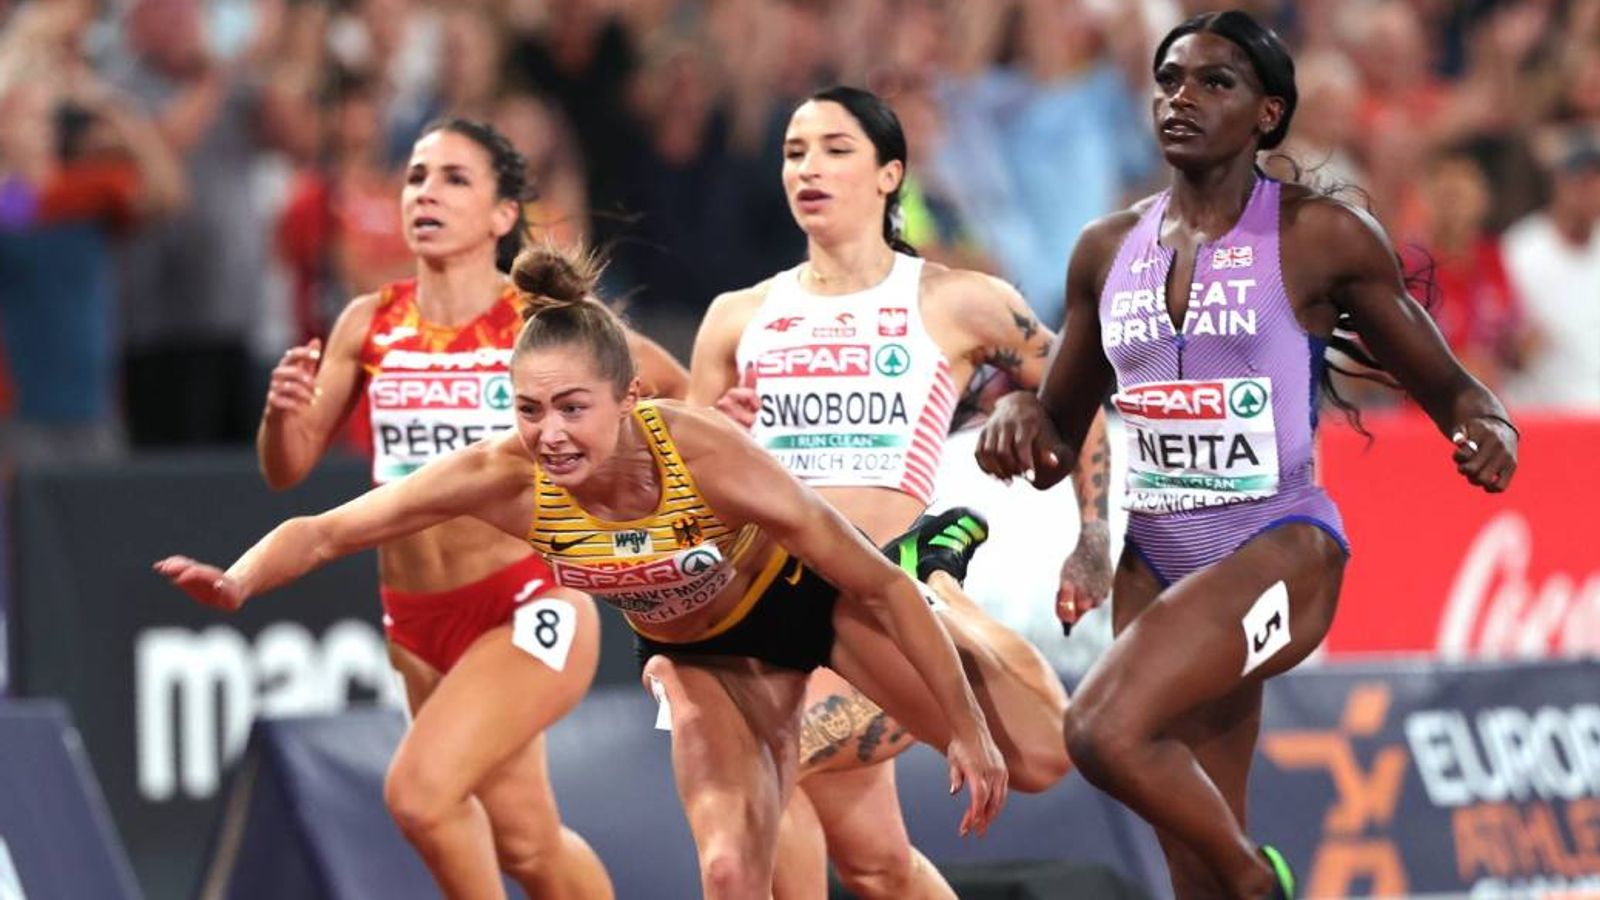 Leichtathletik-EM: Sensation! Gina Lückenkemper  wird Europameisterin